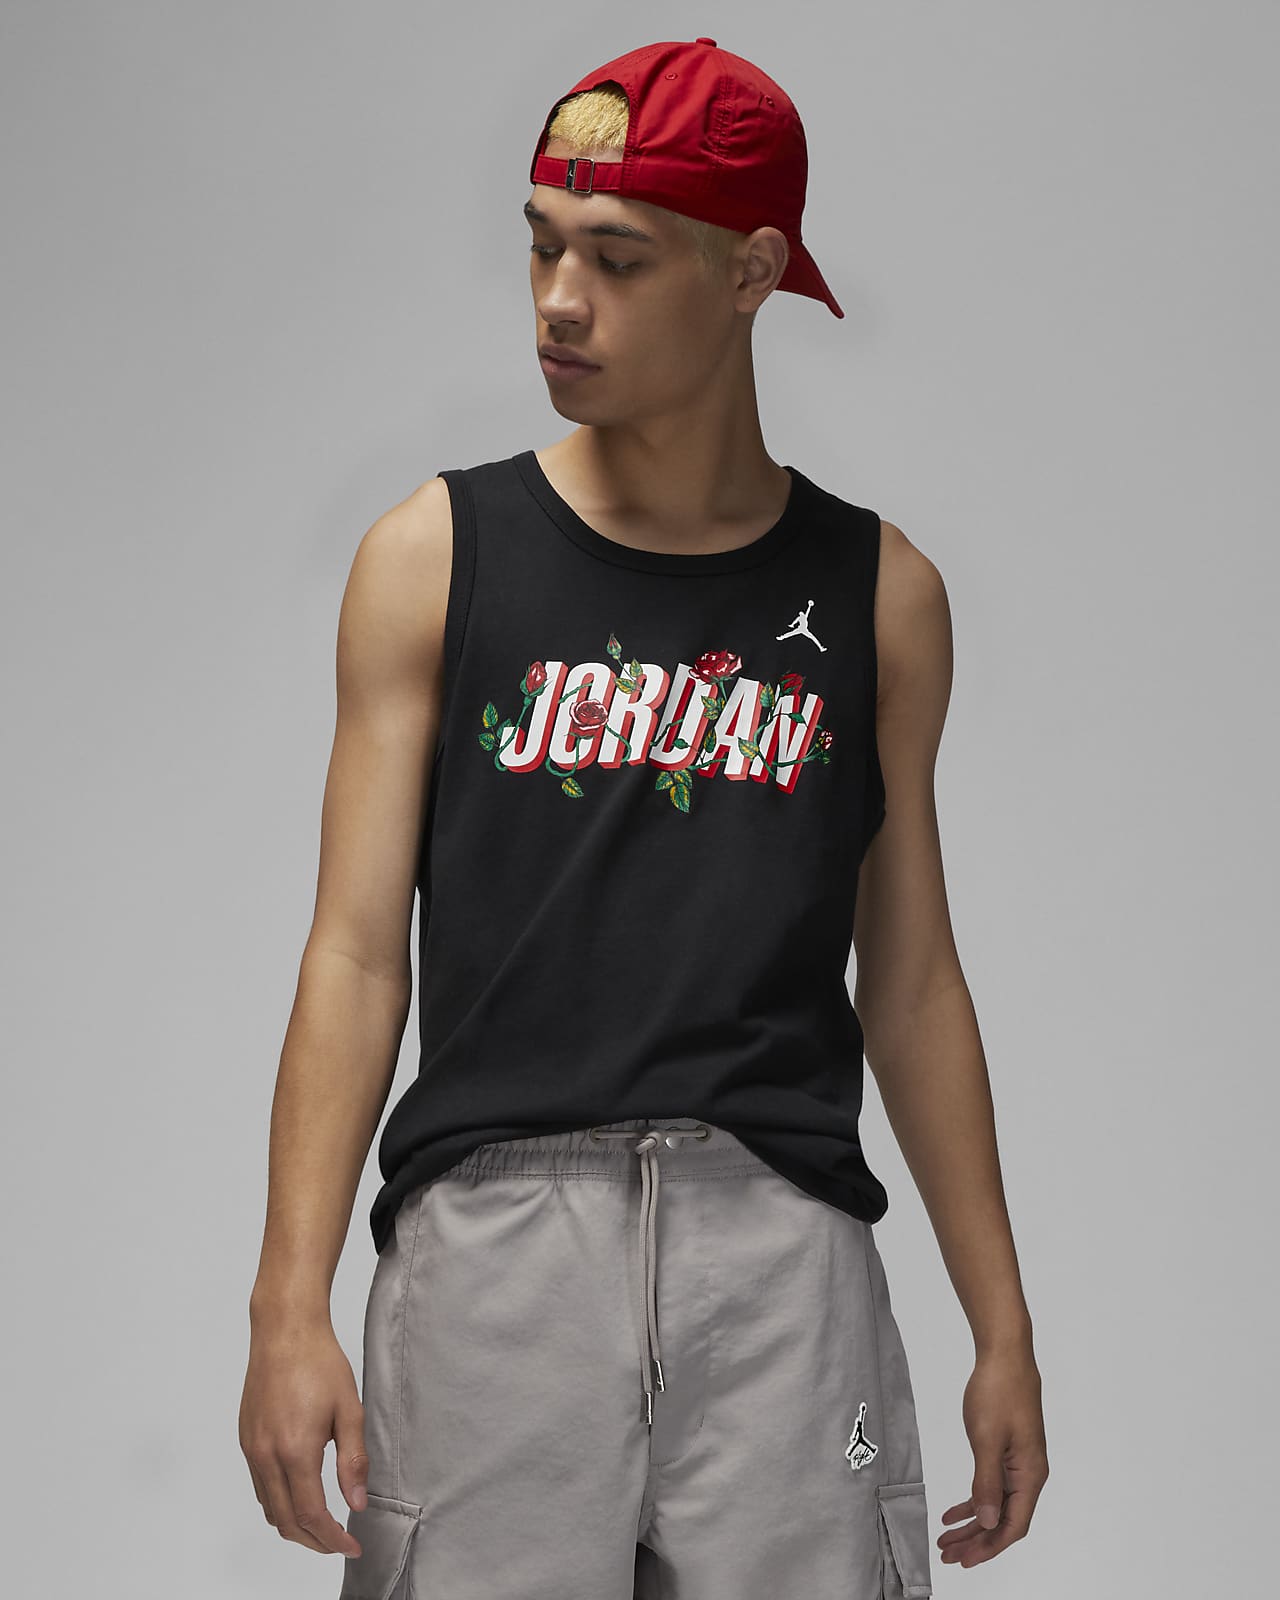 Jordan Brand Sorry Men's Tank Top